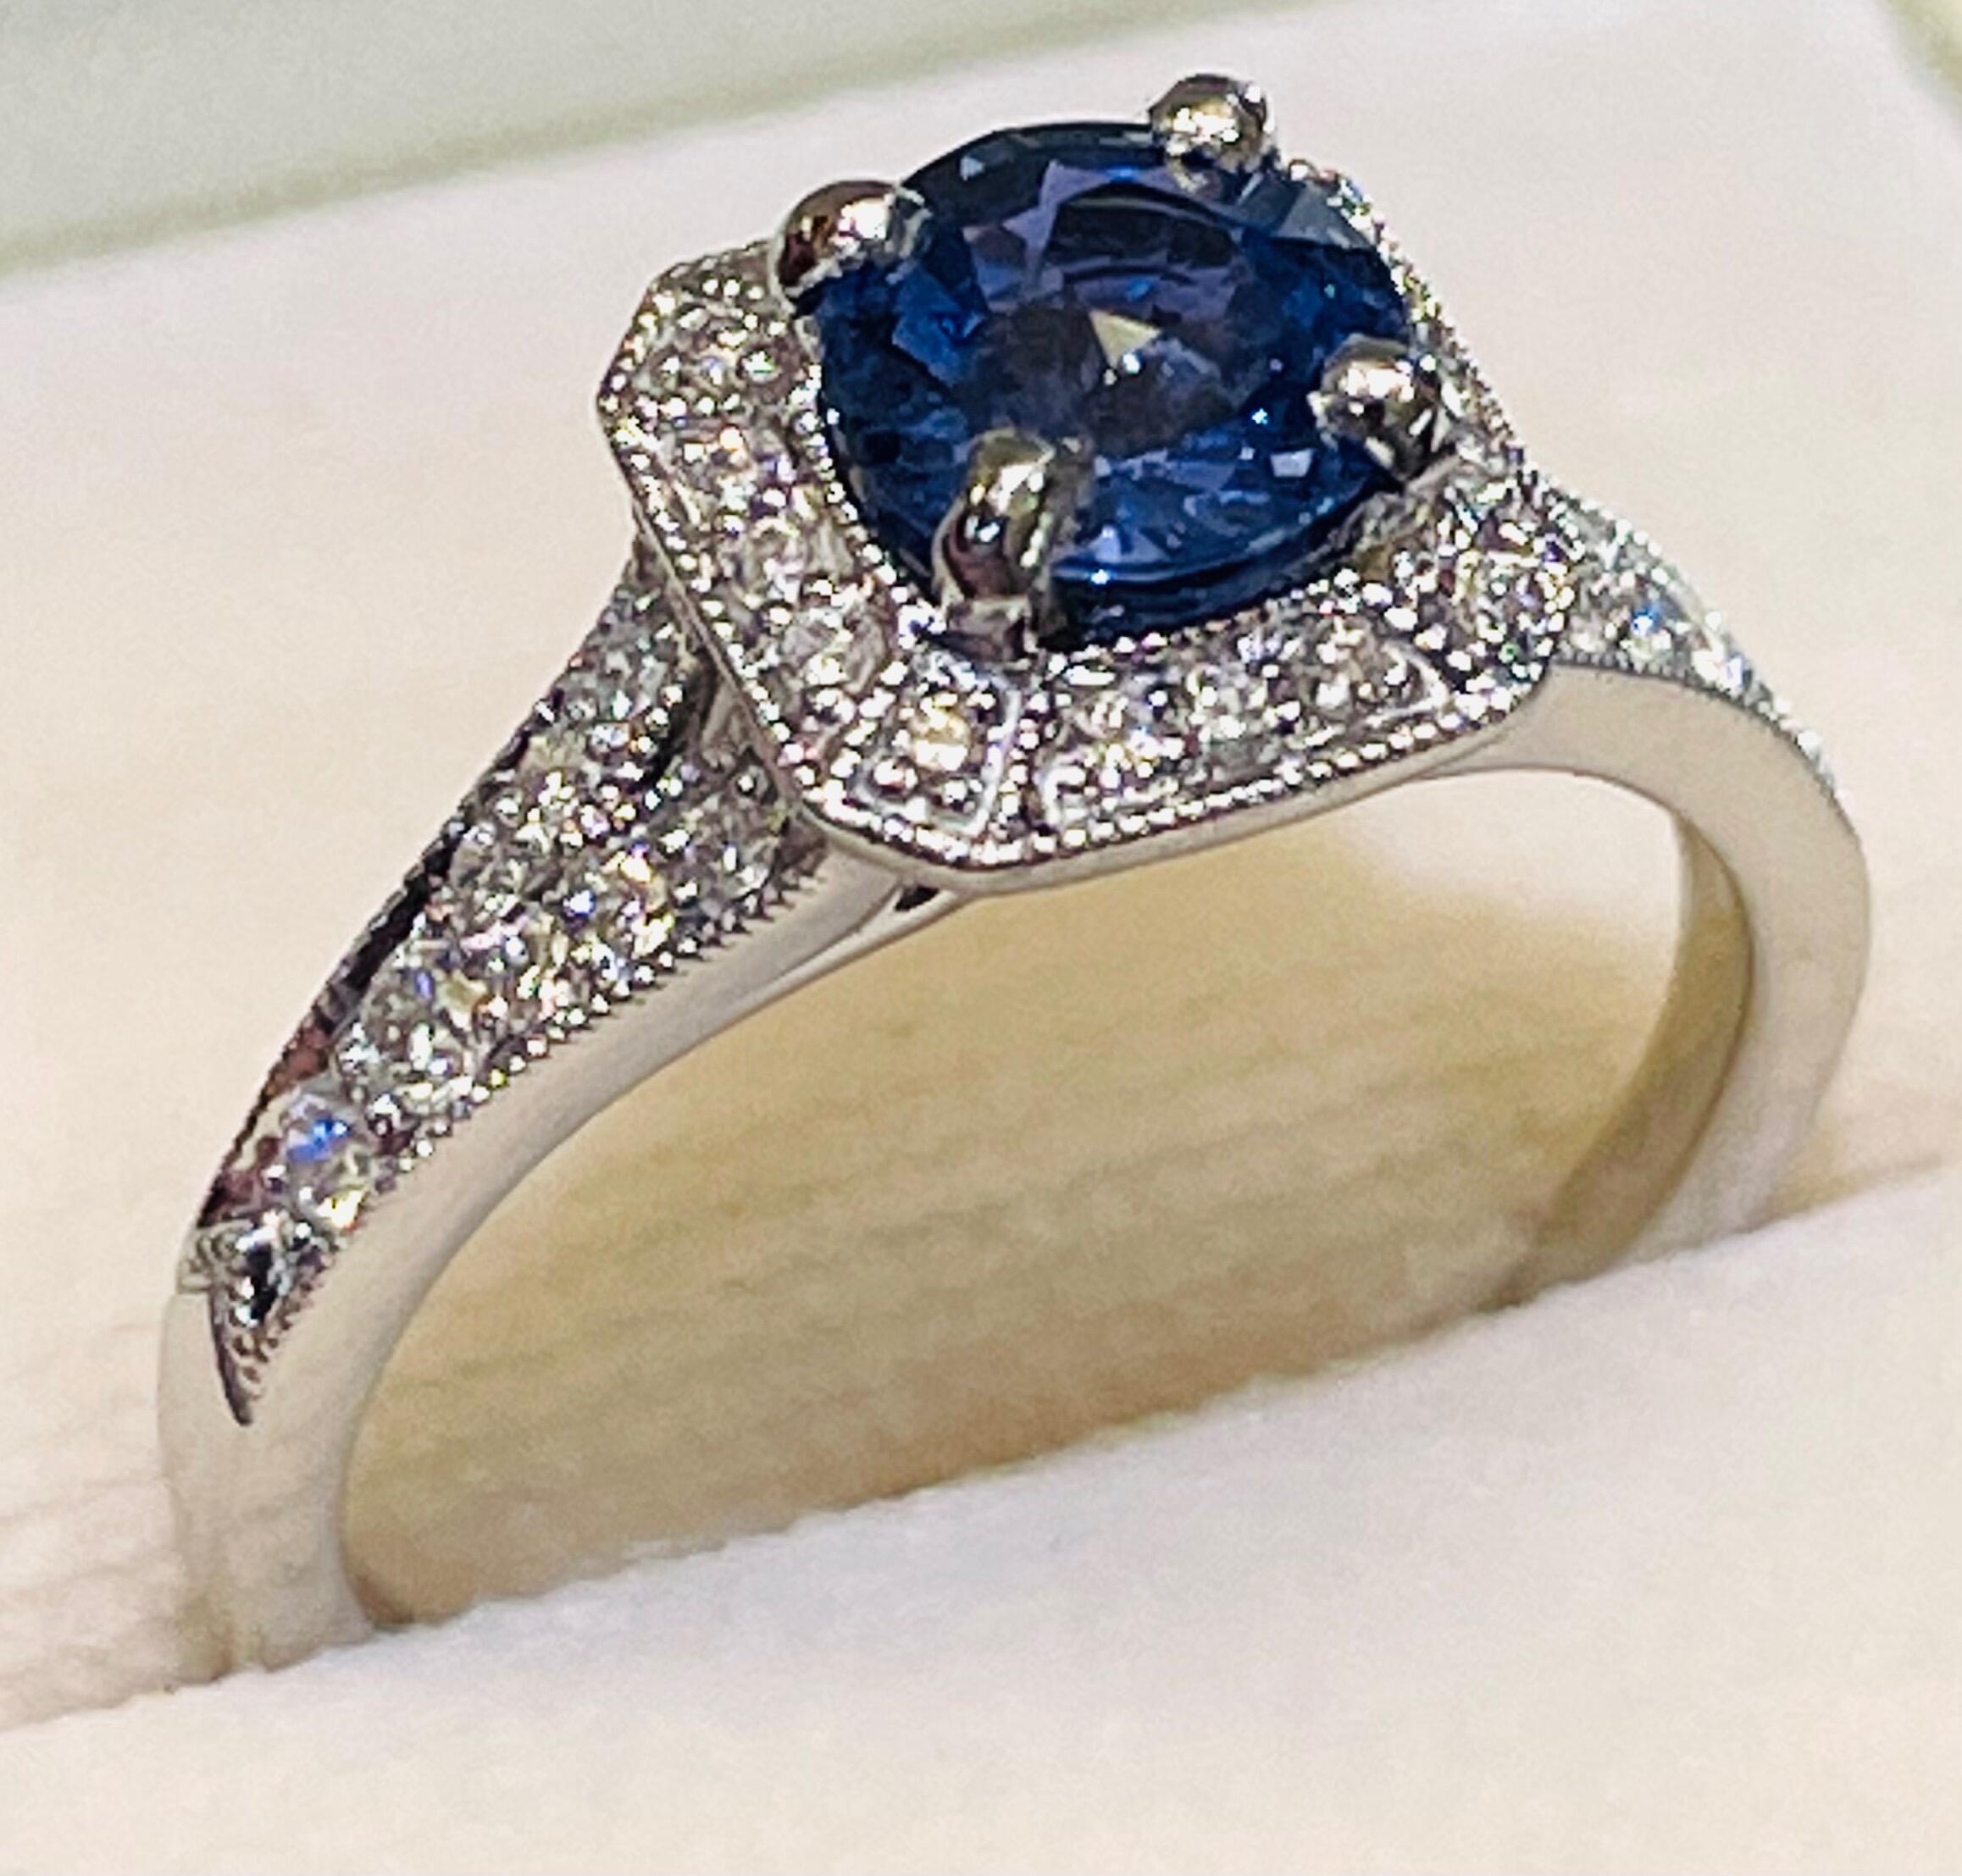 Coloured Gemstone Rings | Buy Online | Johnsons Jewellers